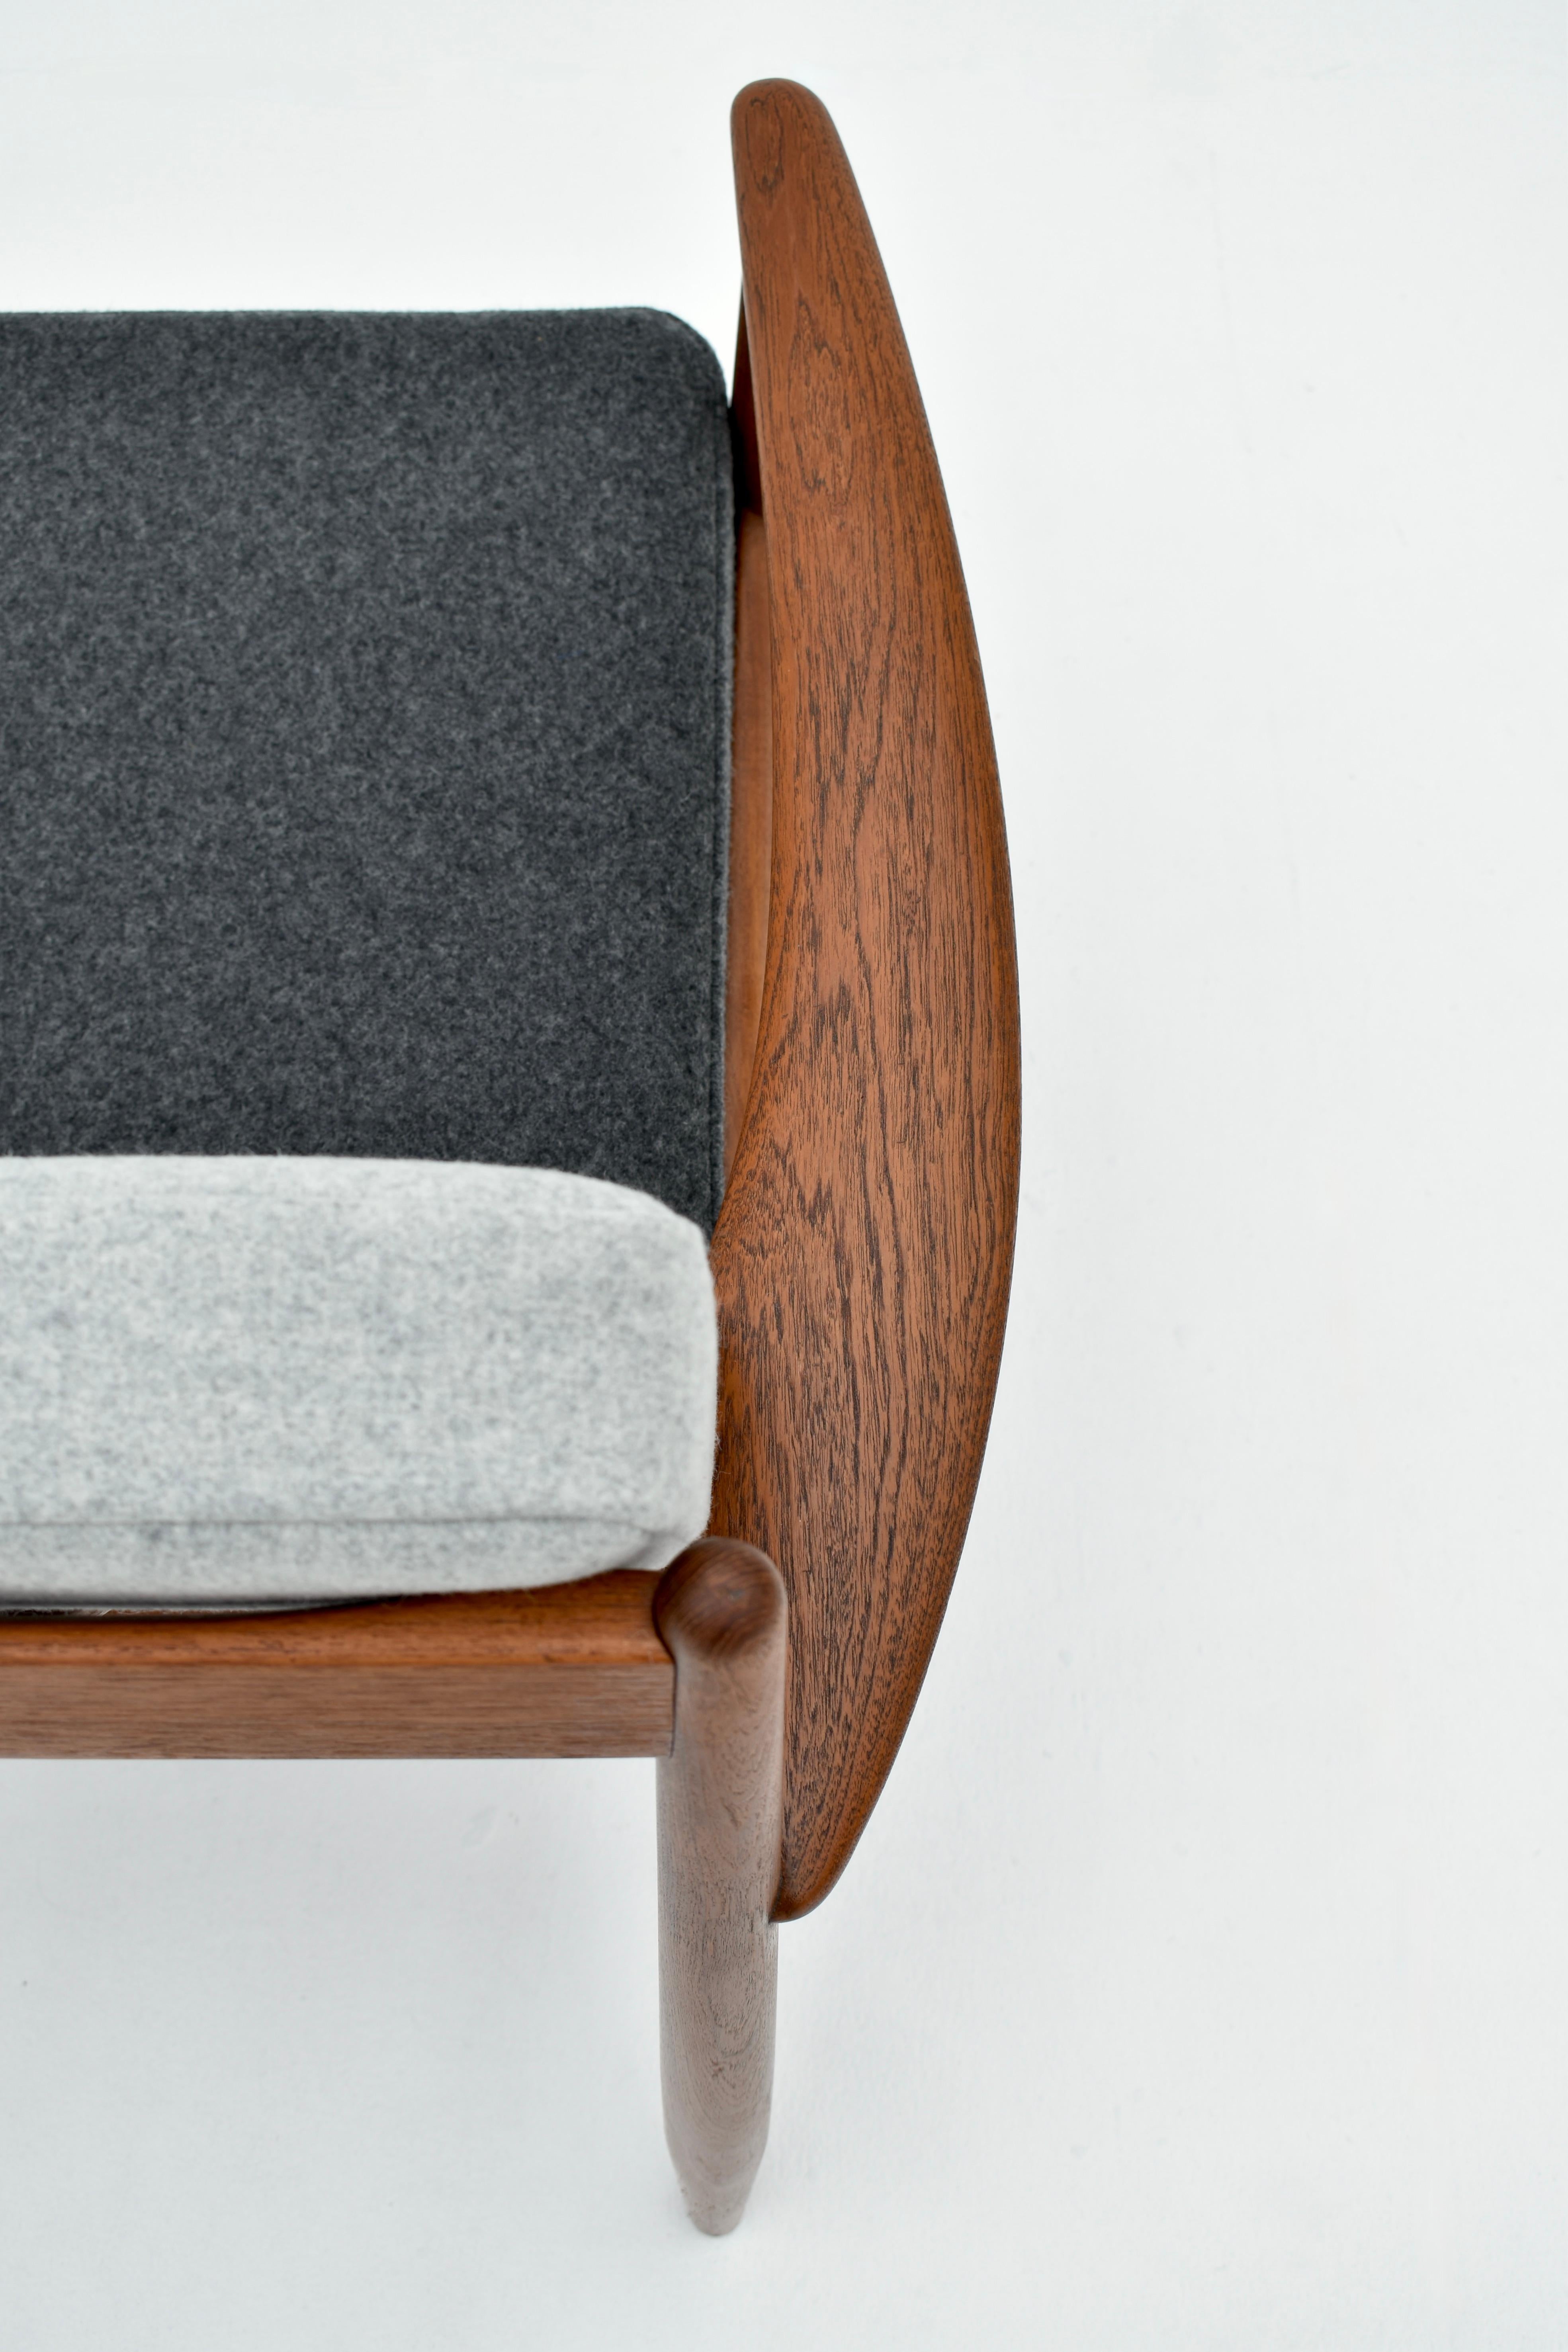 Midcentury Danish Grete Jalk Model 118 Teak Lounge Chair For France & Son 2